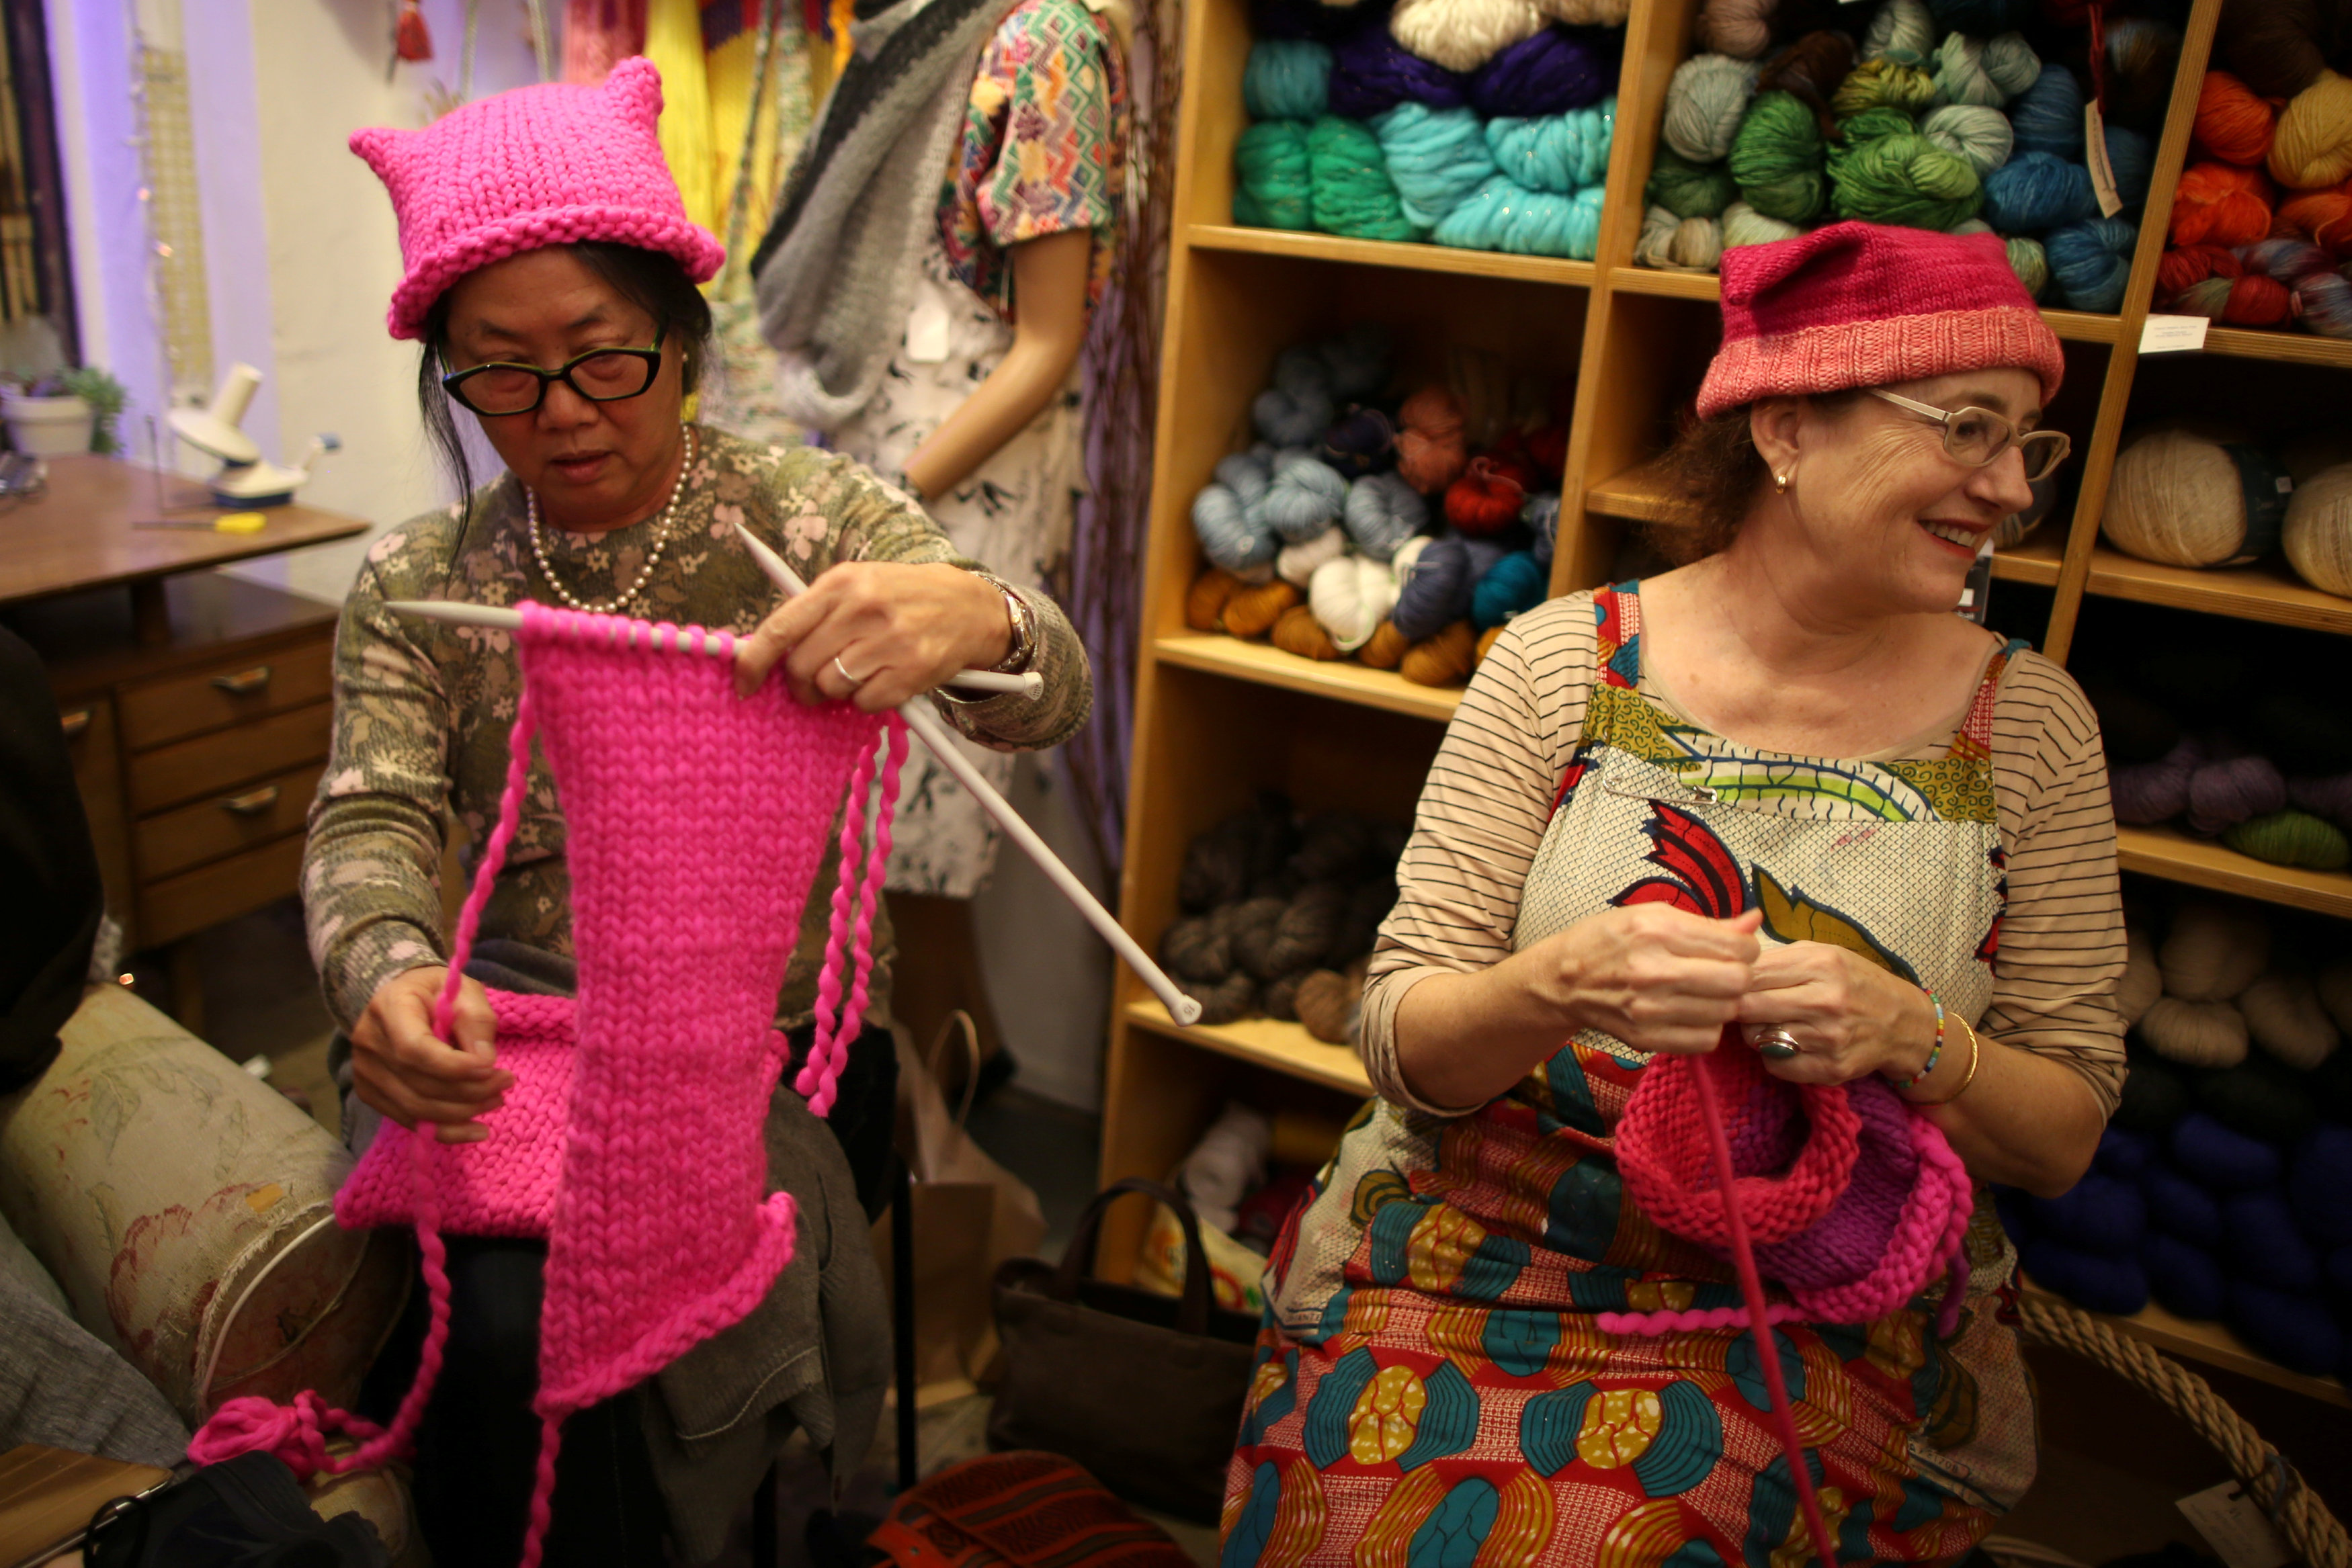 السيدات المشاركات فى الإعداد للمسيرة يتبادلن الضحك أثناء تصنيع القبعات